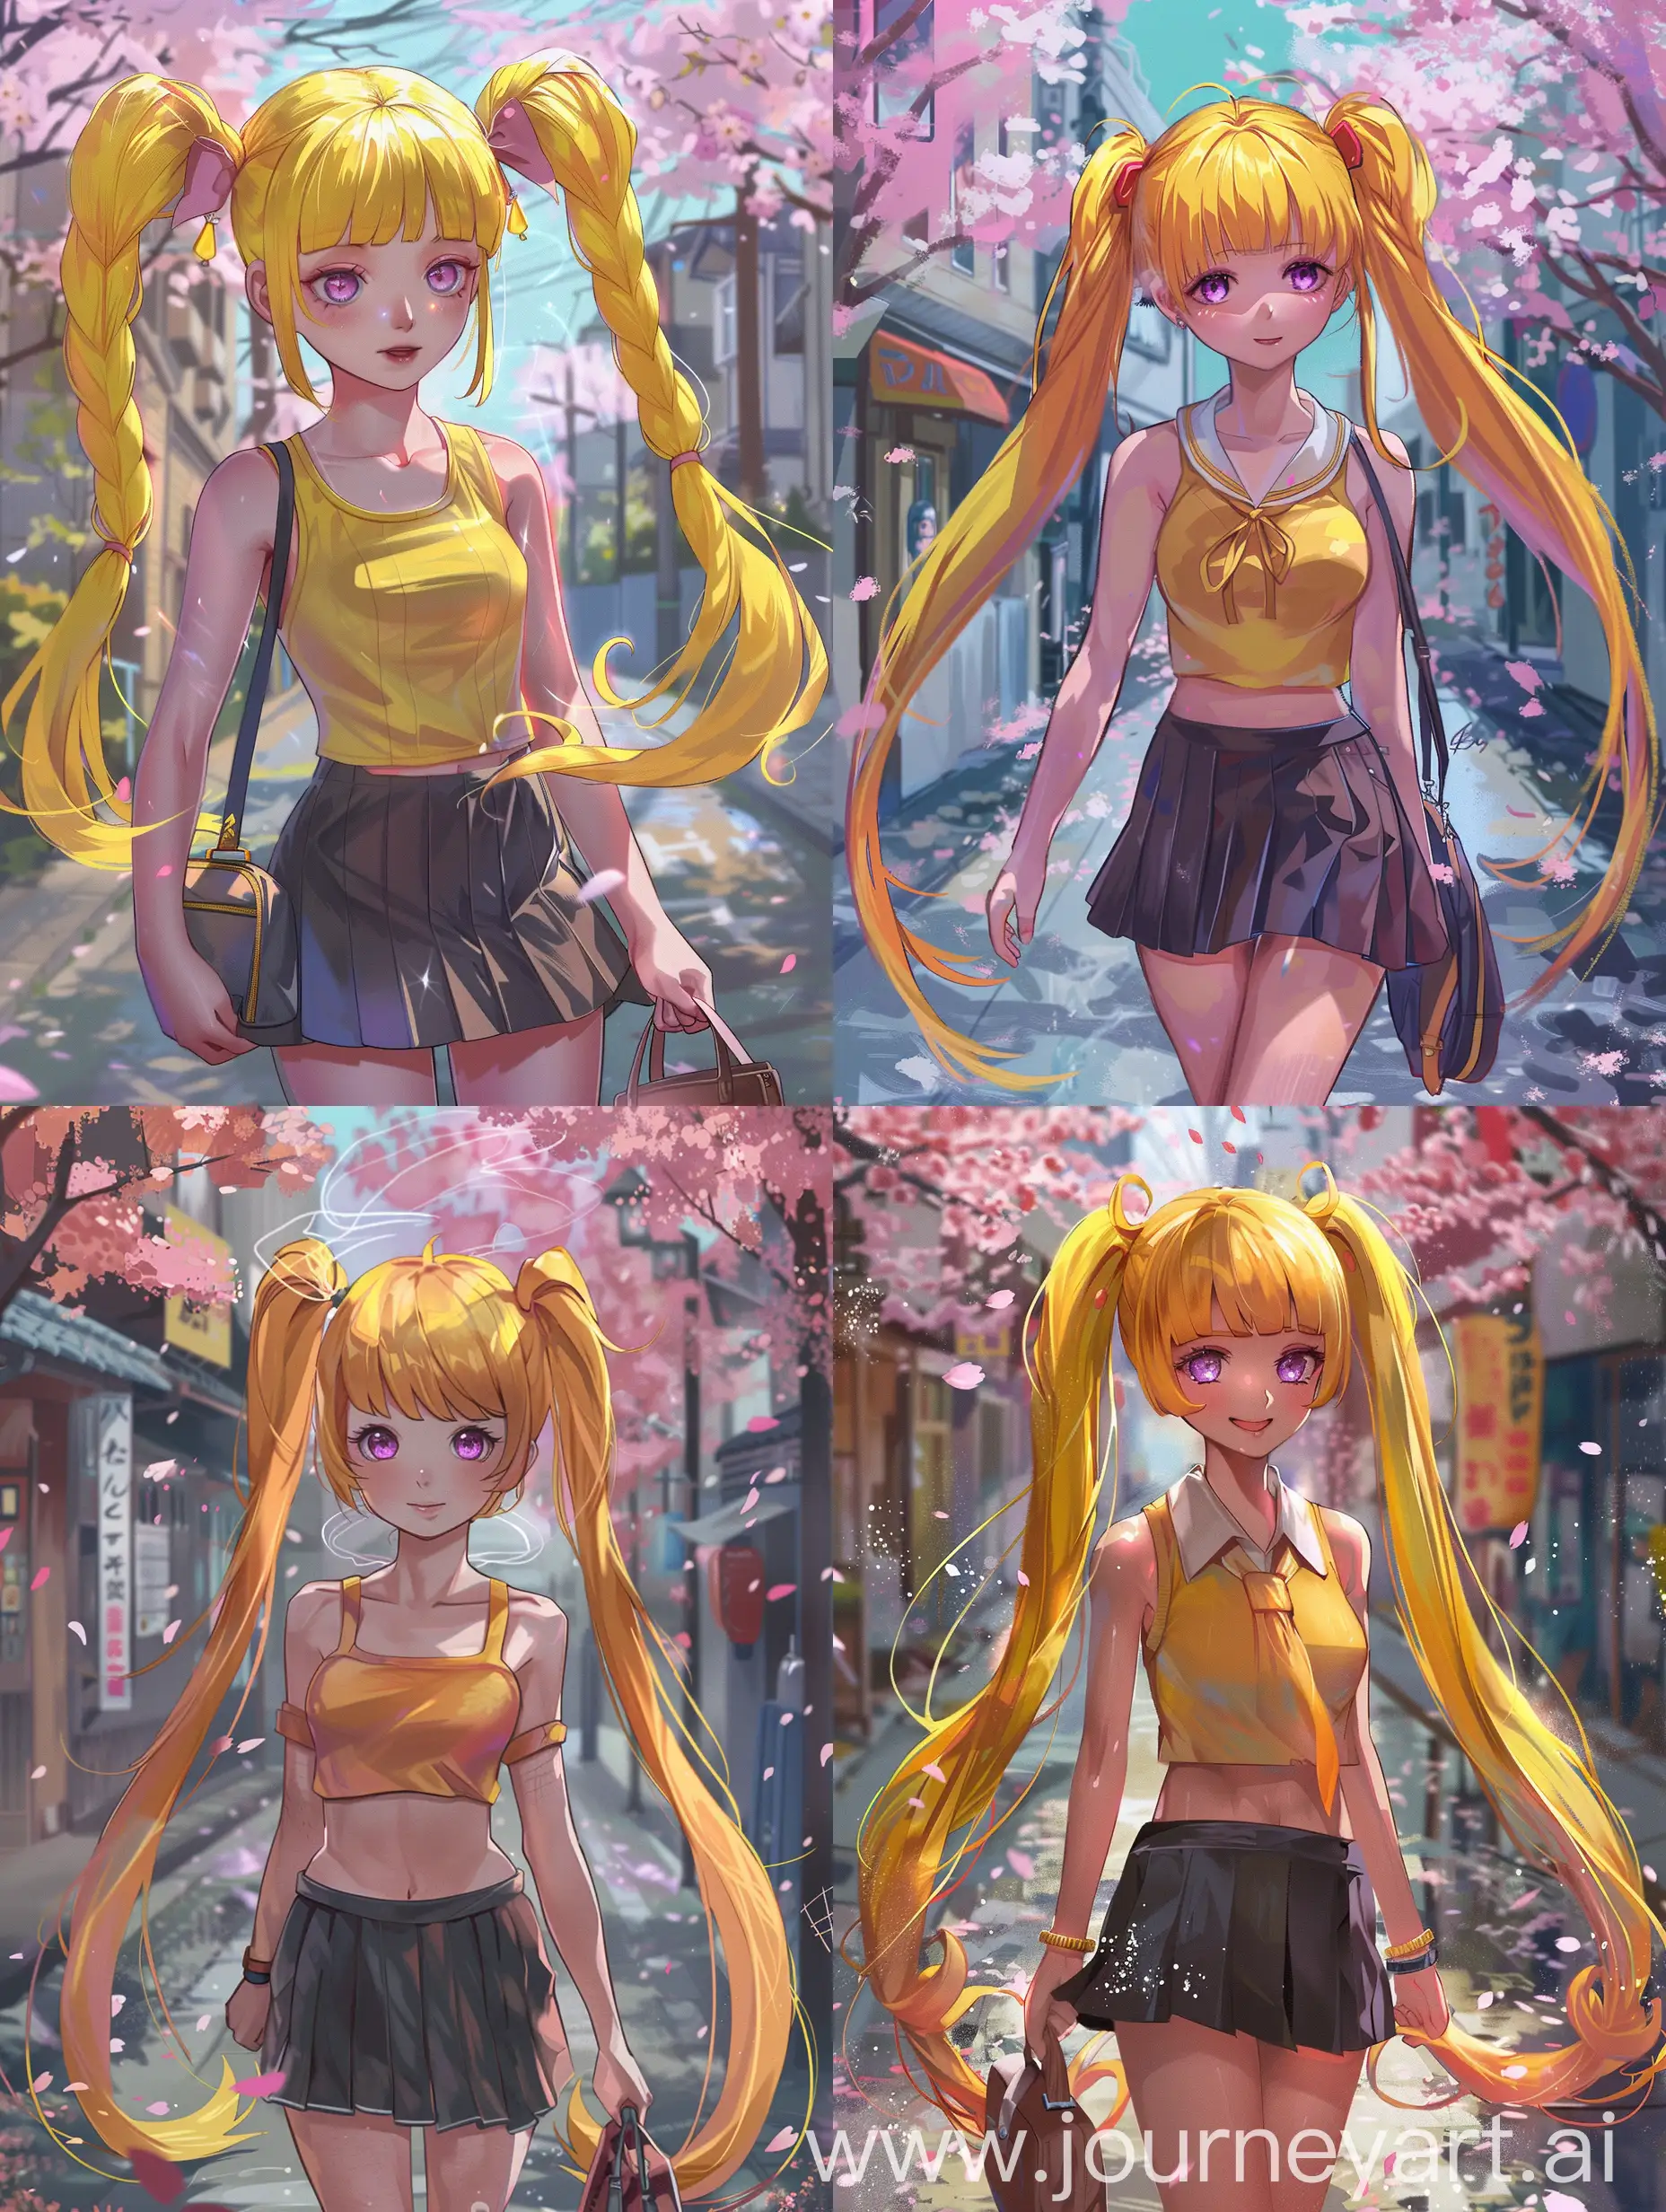 Magical-Anime-Girl-Walking-Among-Cherry-Blossoms